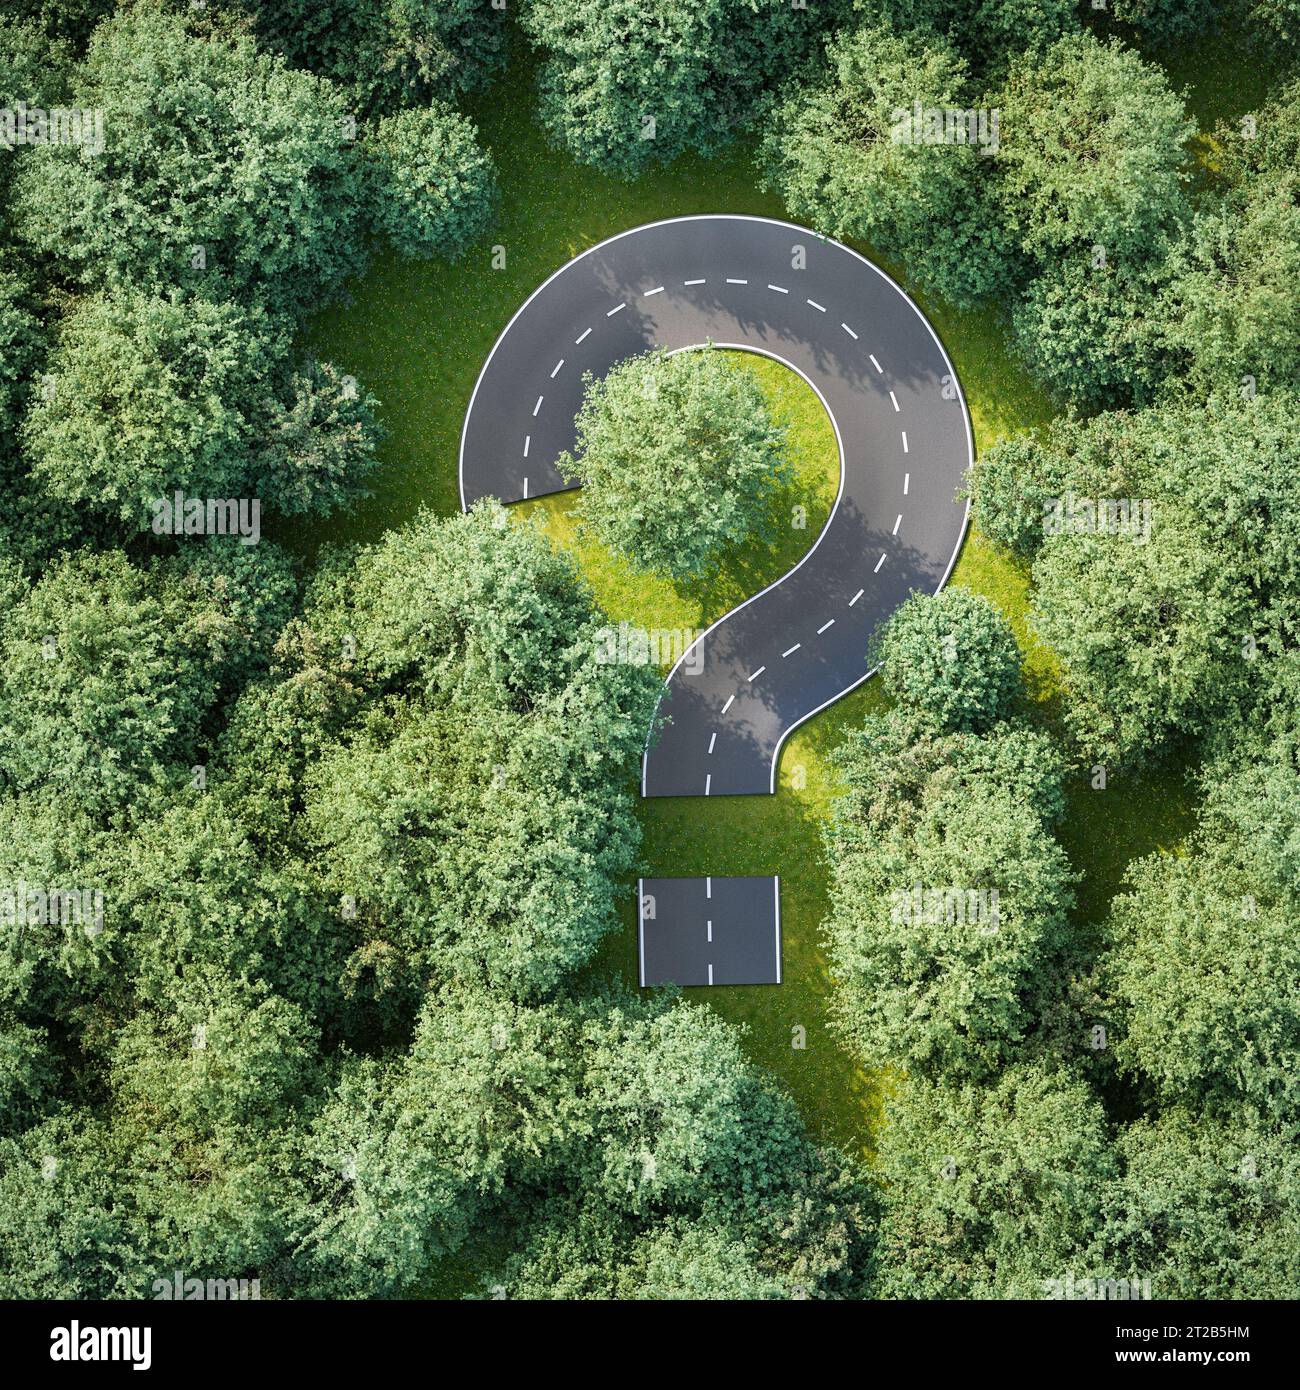 Immagine aerea di una strada sotto forma di punto interrogativo all'interno di una foresta di olmi - concetto di domande e risposte, incertezza. rendering 3d. Foto Stock